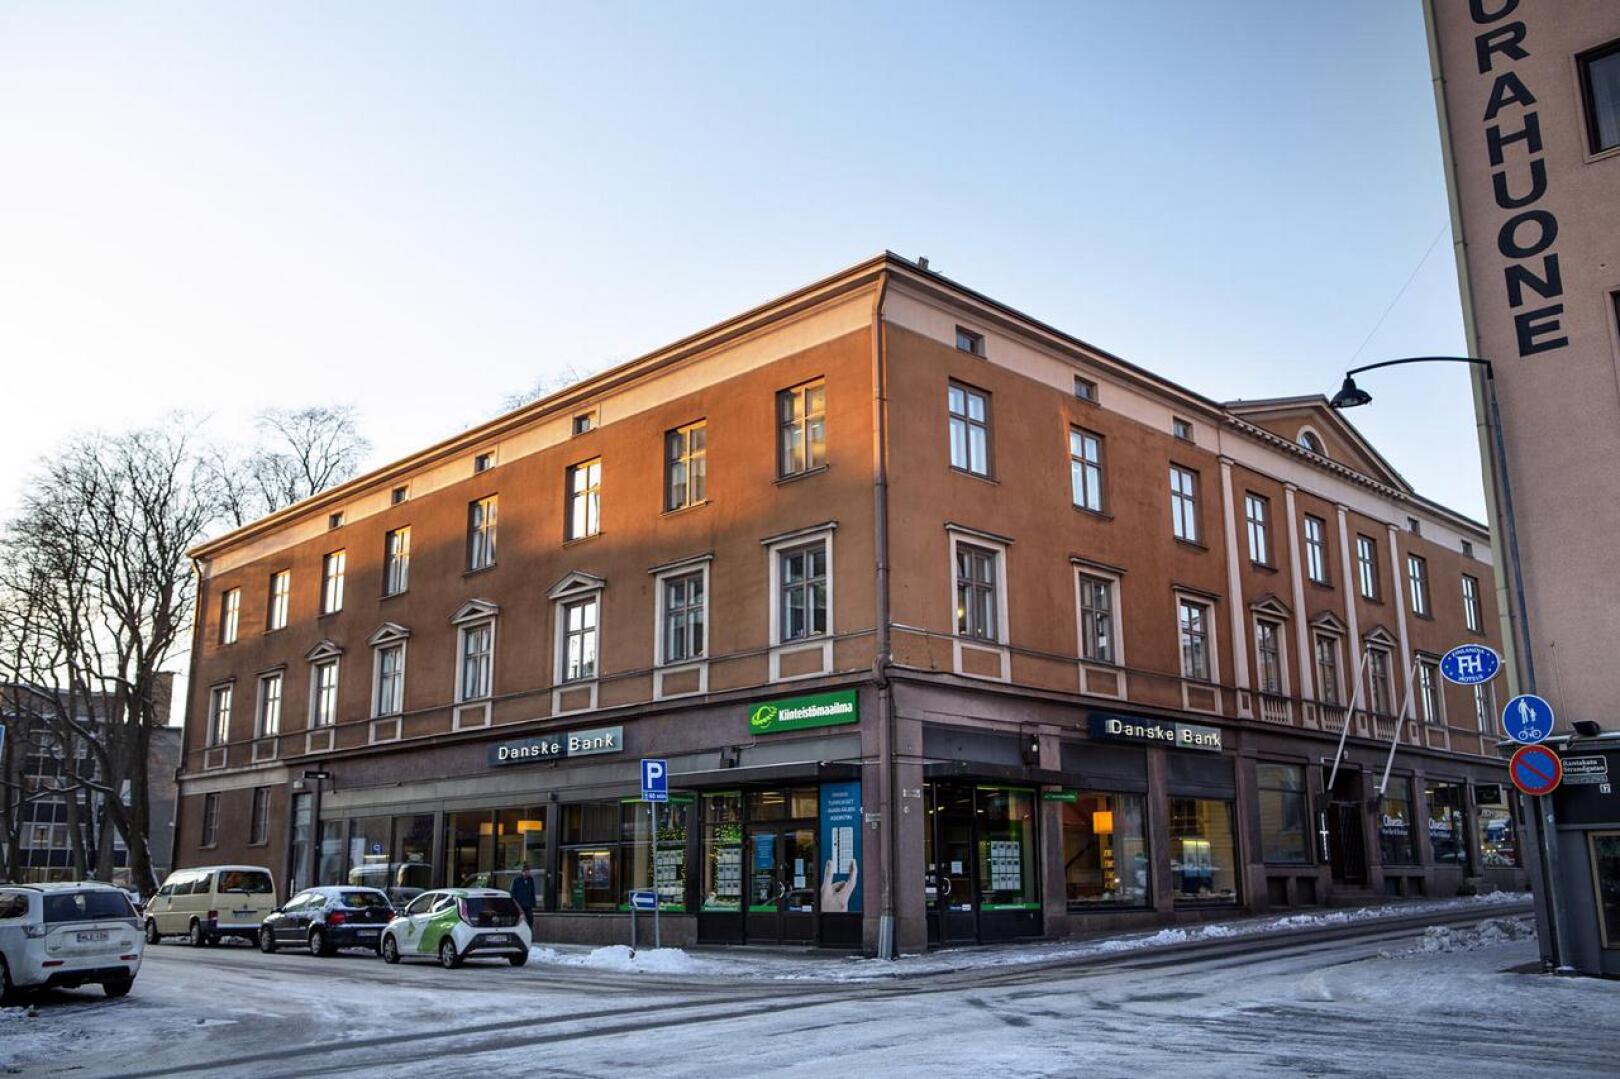 Rakennusmestari Gunnar Indola suunnitteli Slotten perheelle asuin- ja liikekäyttöön tarkoitetun kiinteistön, joka valmistui vuonna 1928. 